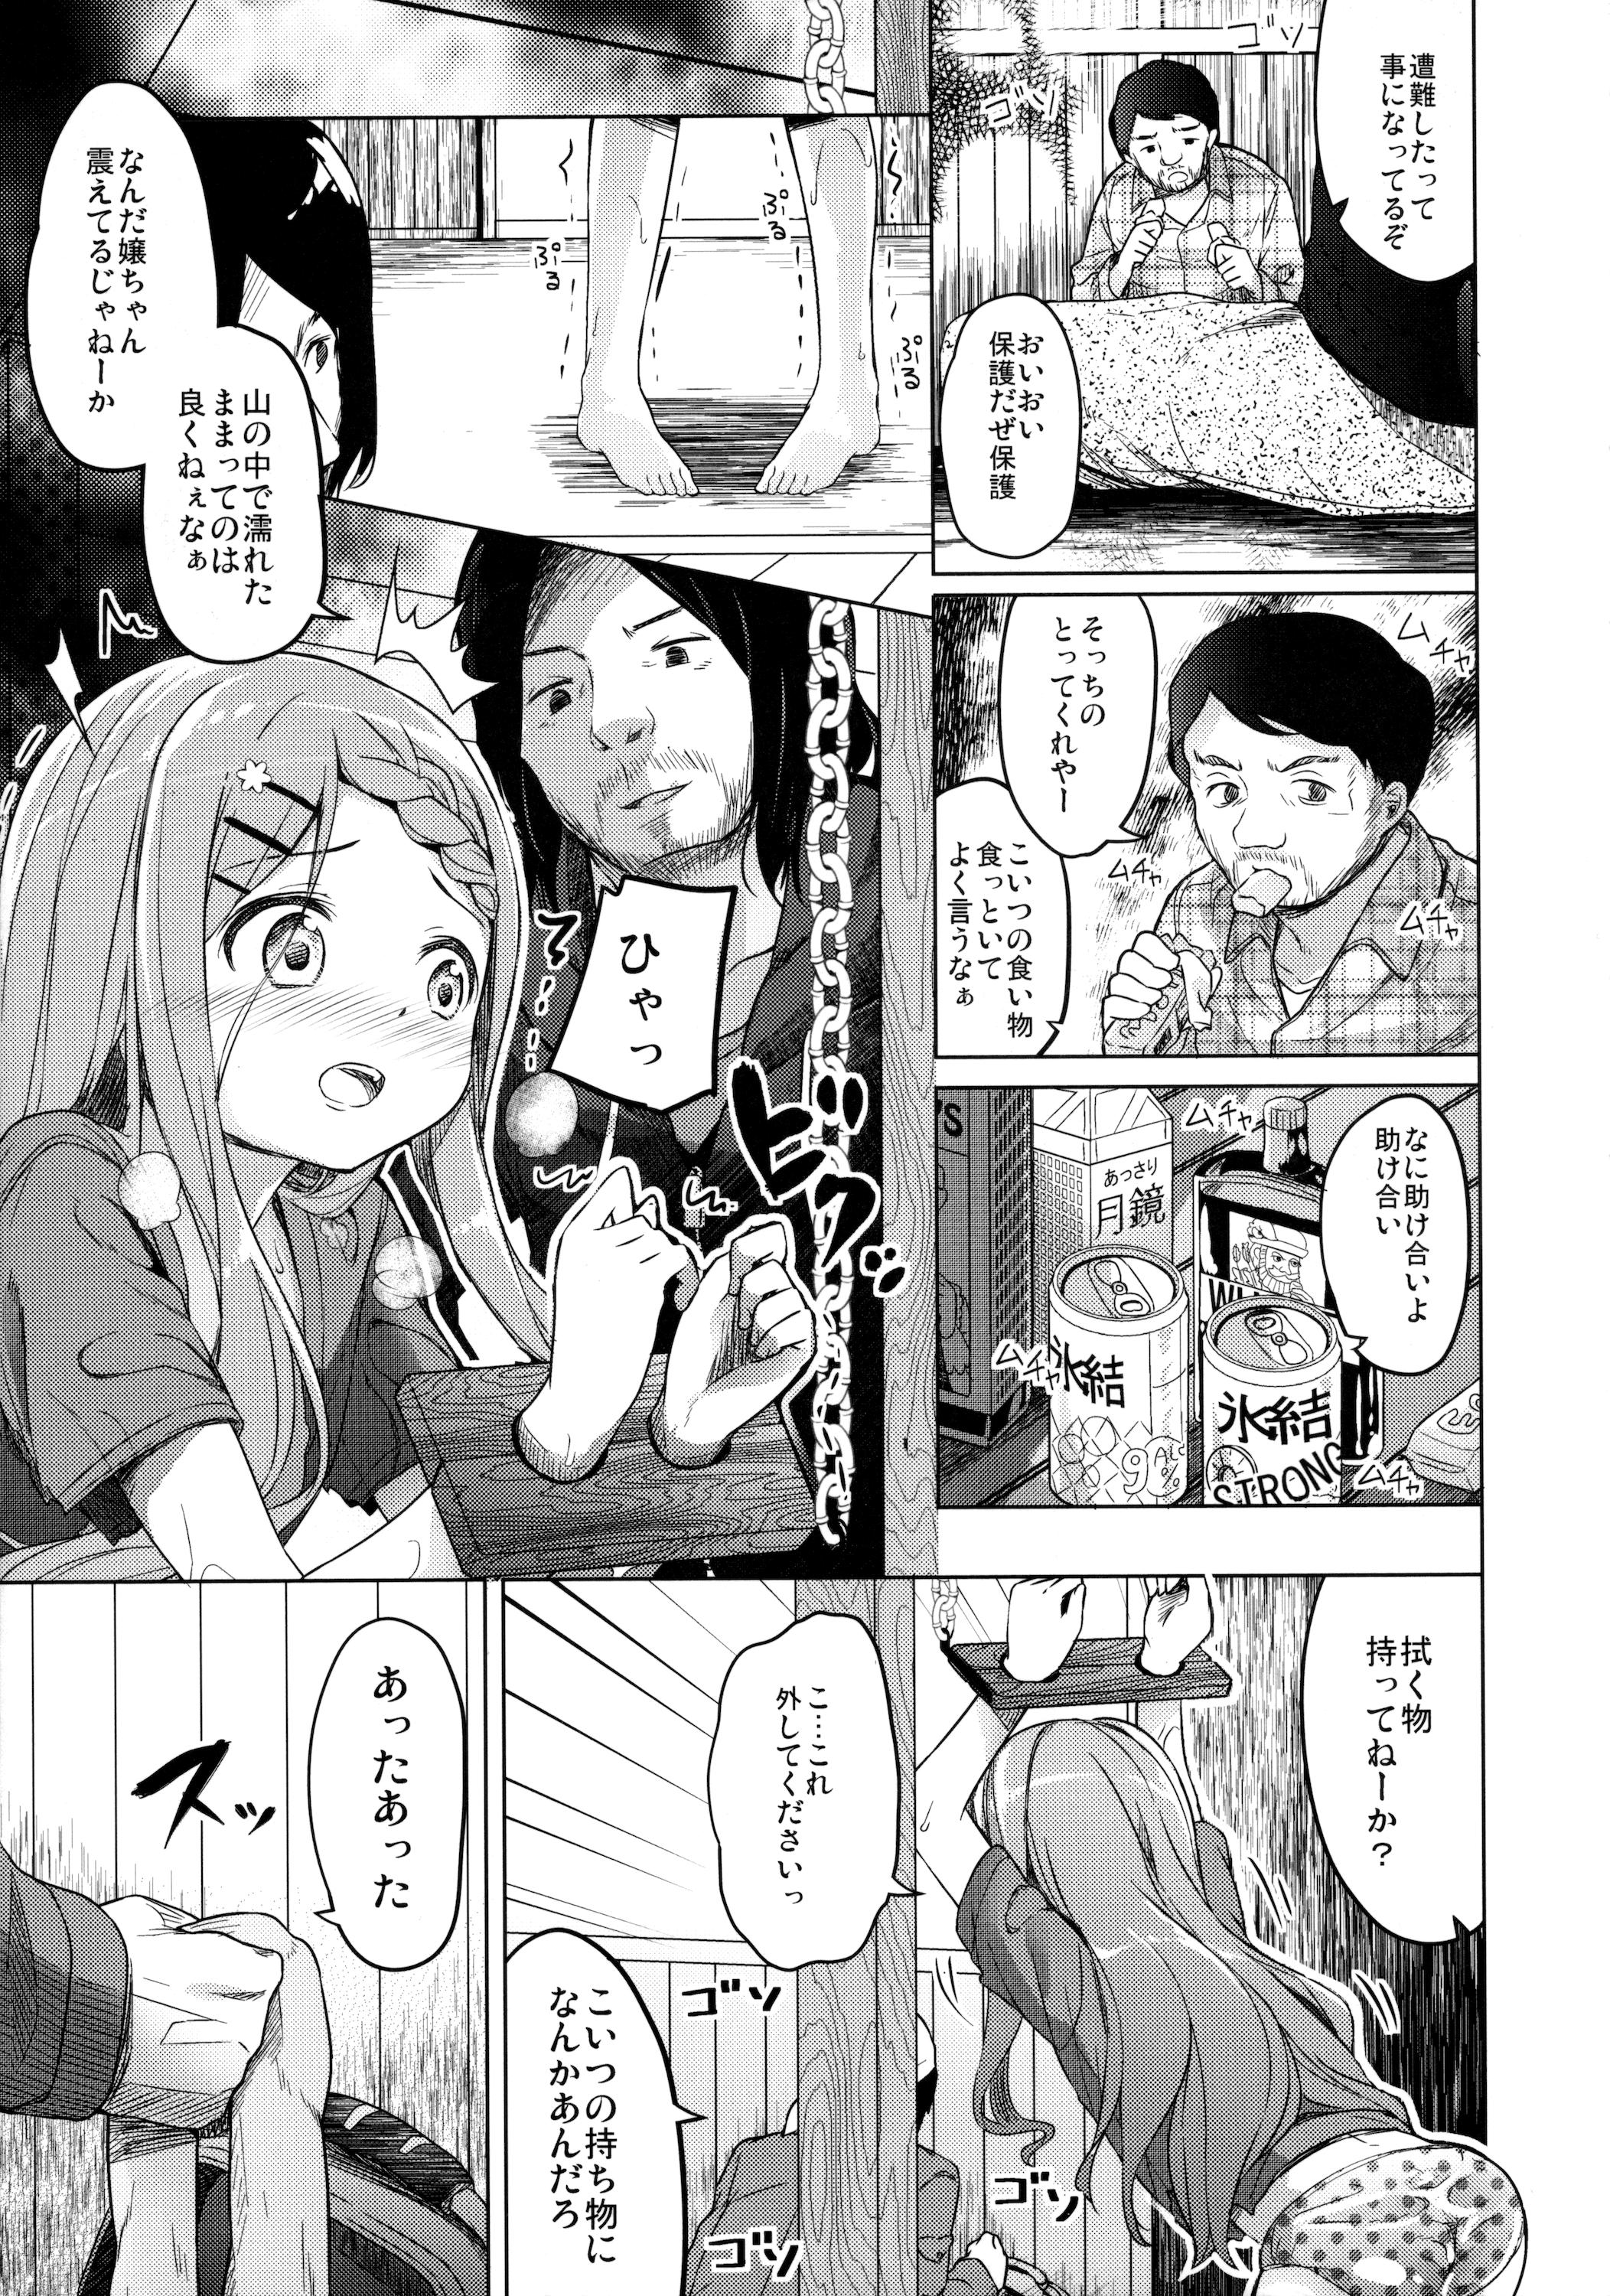 Masturbandose Yama no Jiken - Yama no susume Tongue - Page 12